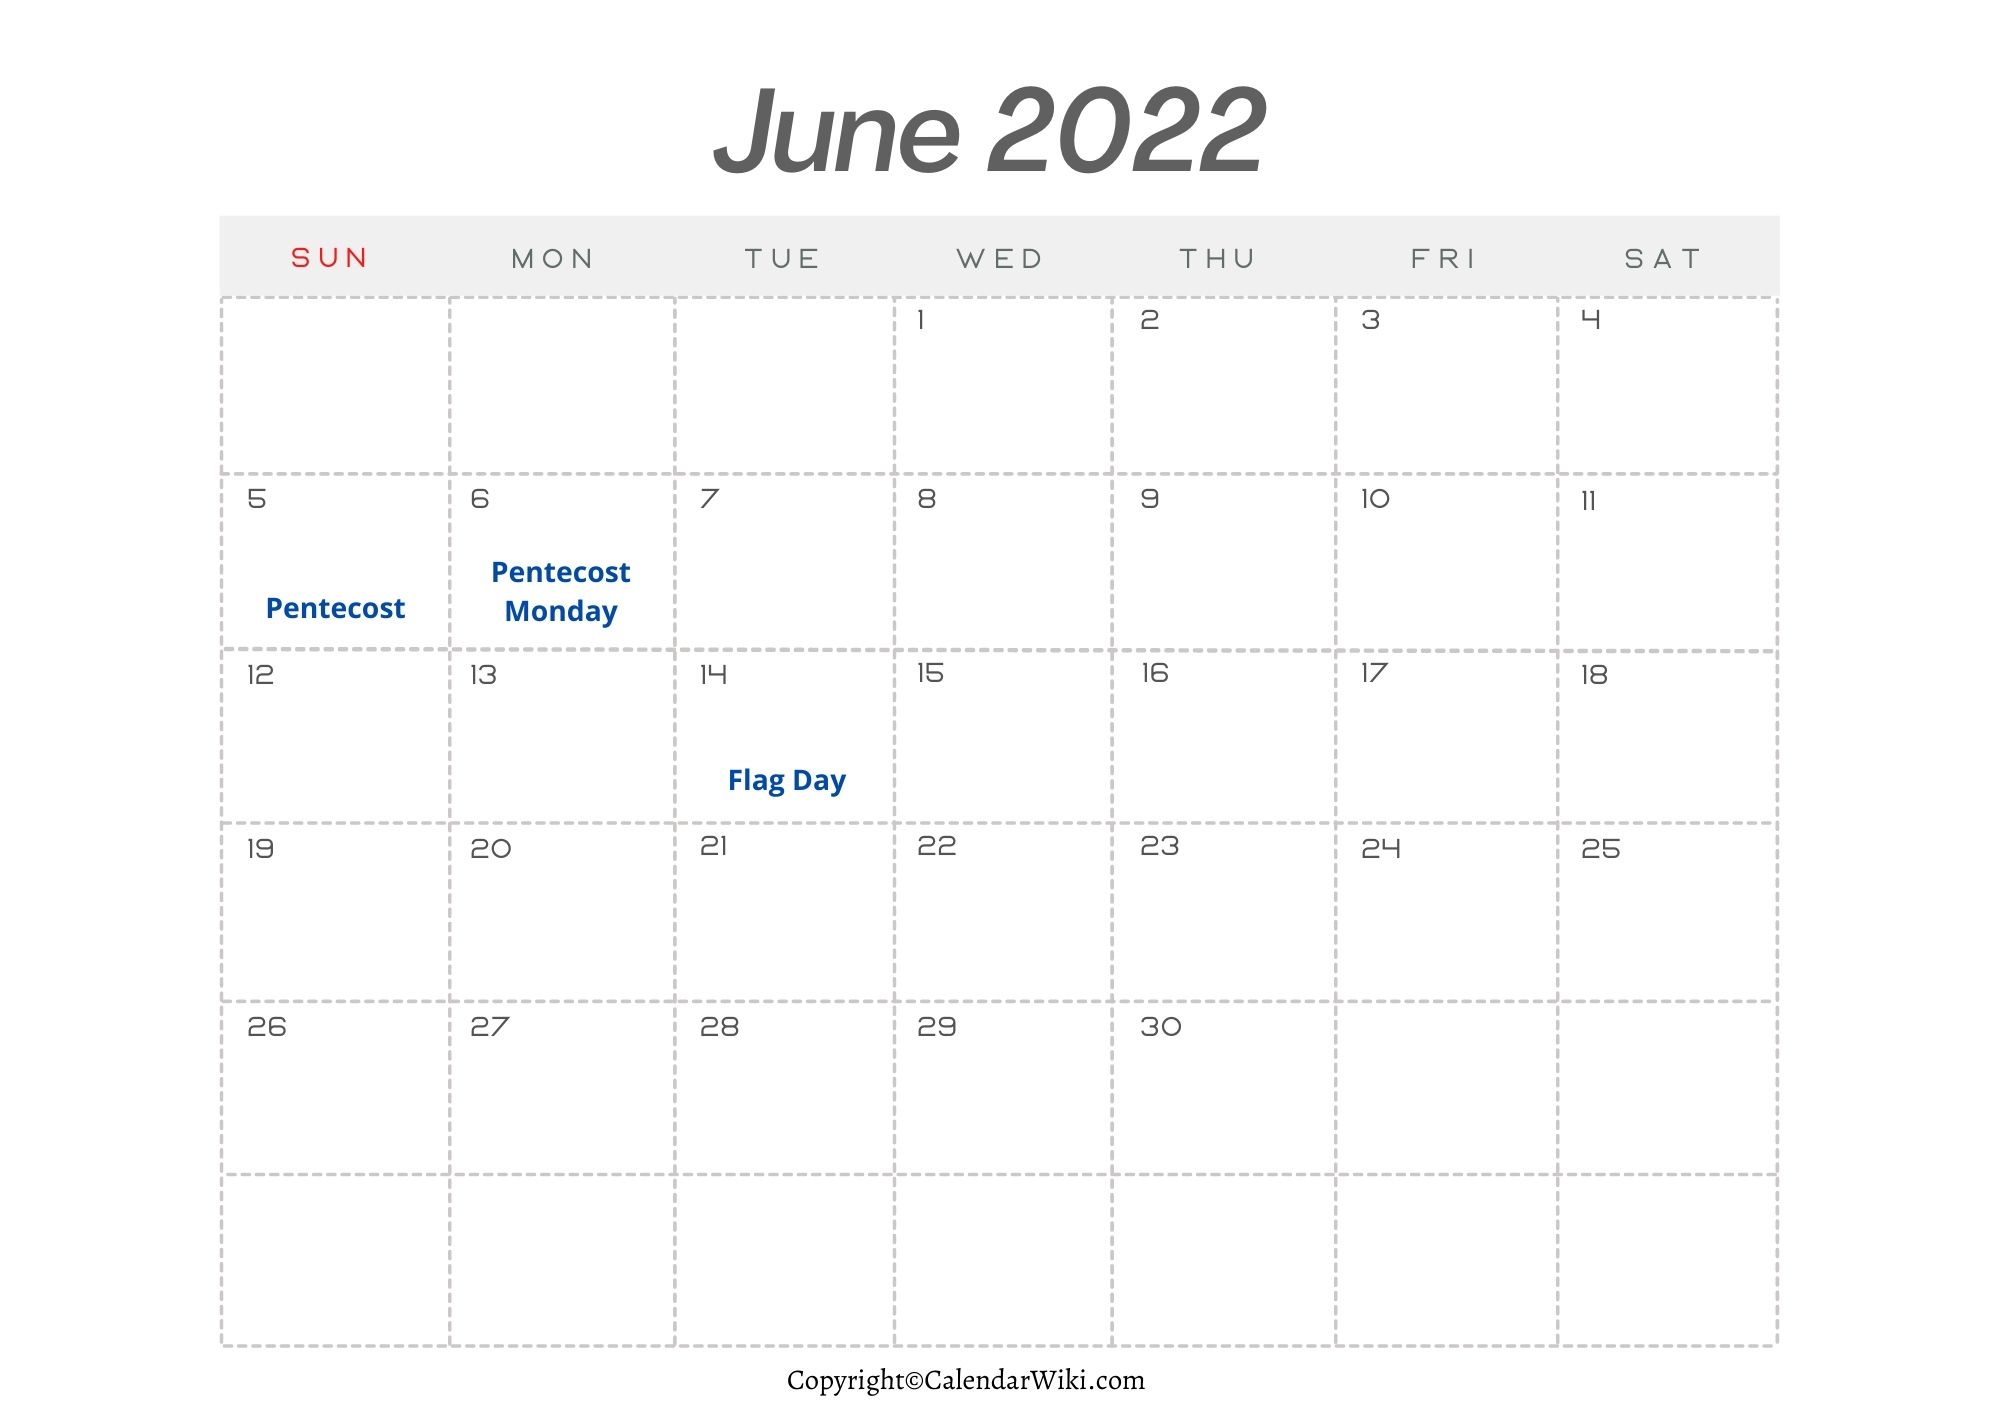 June Holidays 2022